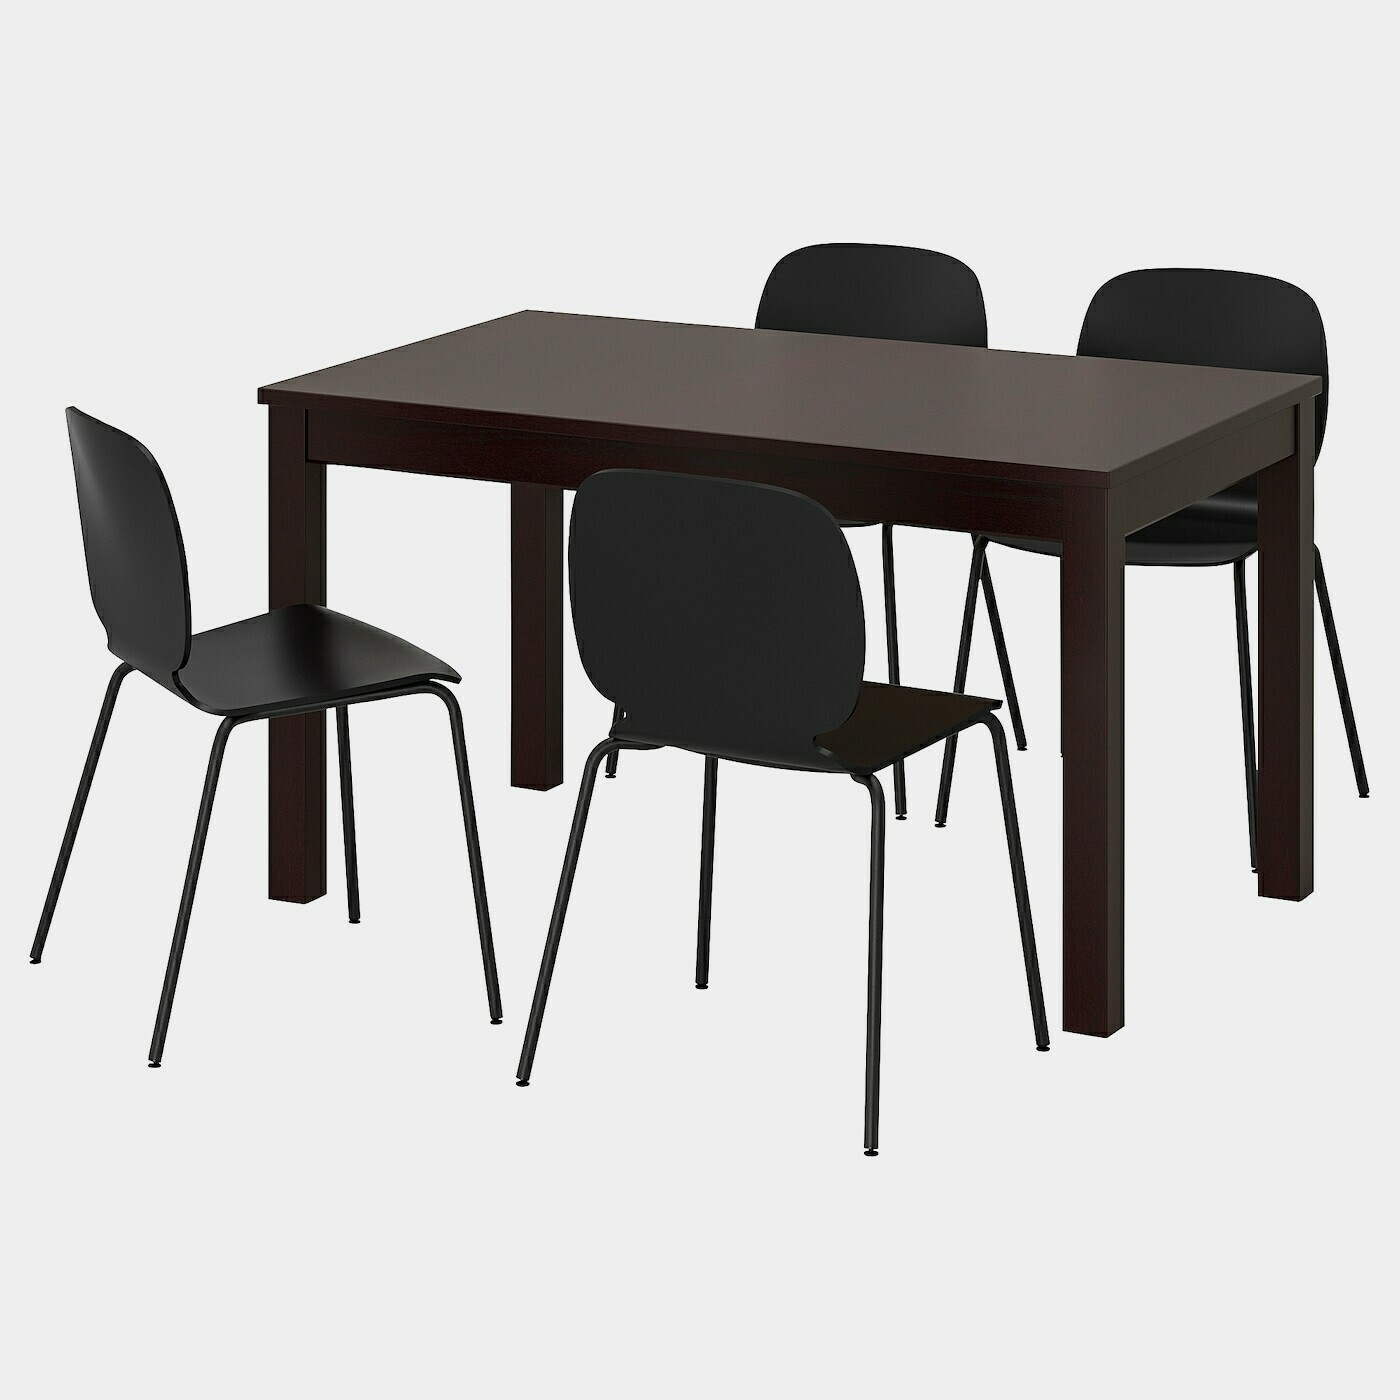 LANEBERG / SVENBERTIL Tisch und 4 Stühle  - Essplatzgruppe - Möbel Ideen für dein Zuhause von Home Trends. Möbel Trends von Social Media Influencer für dein Skandi Zuhause.